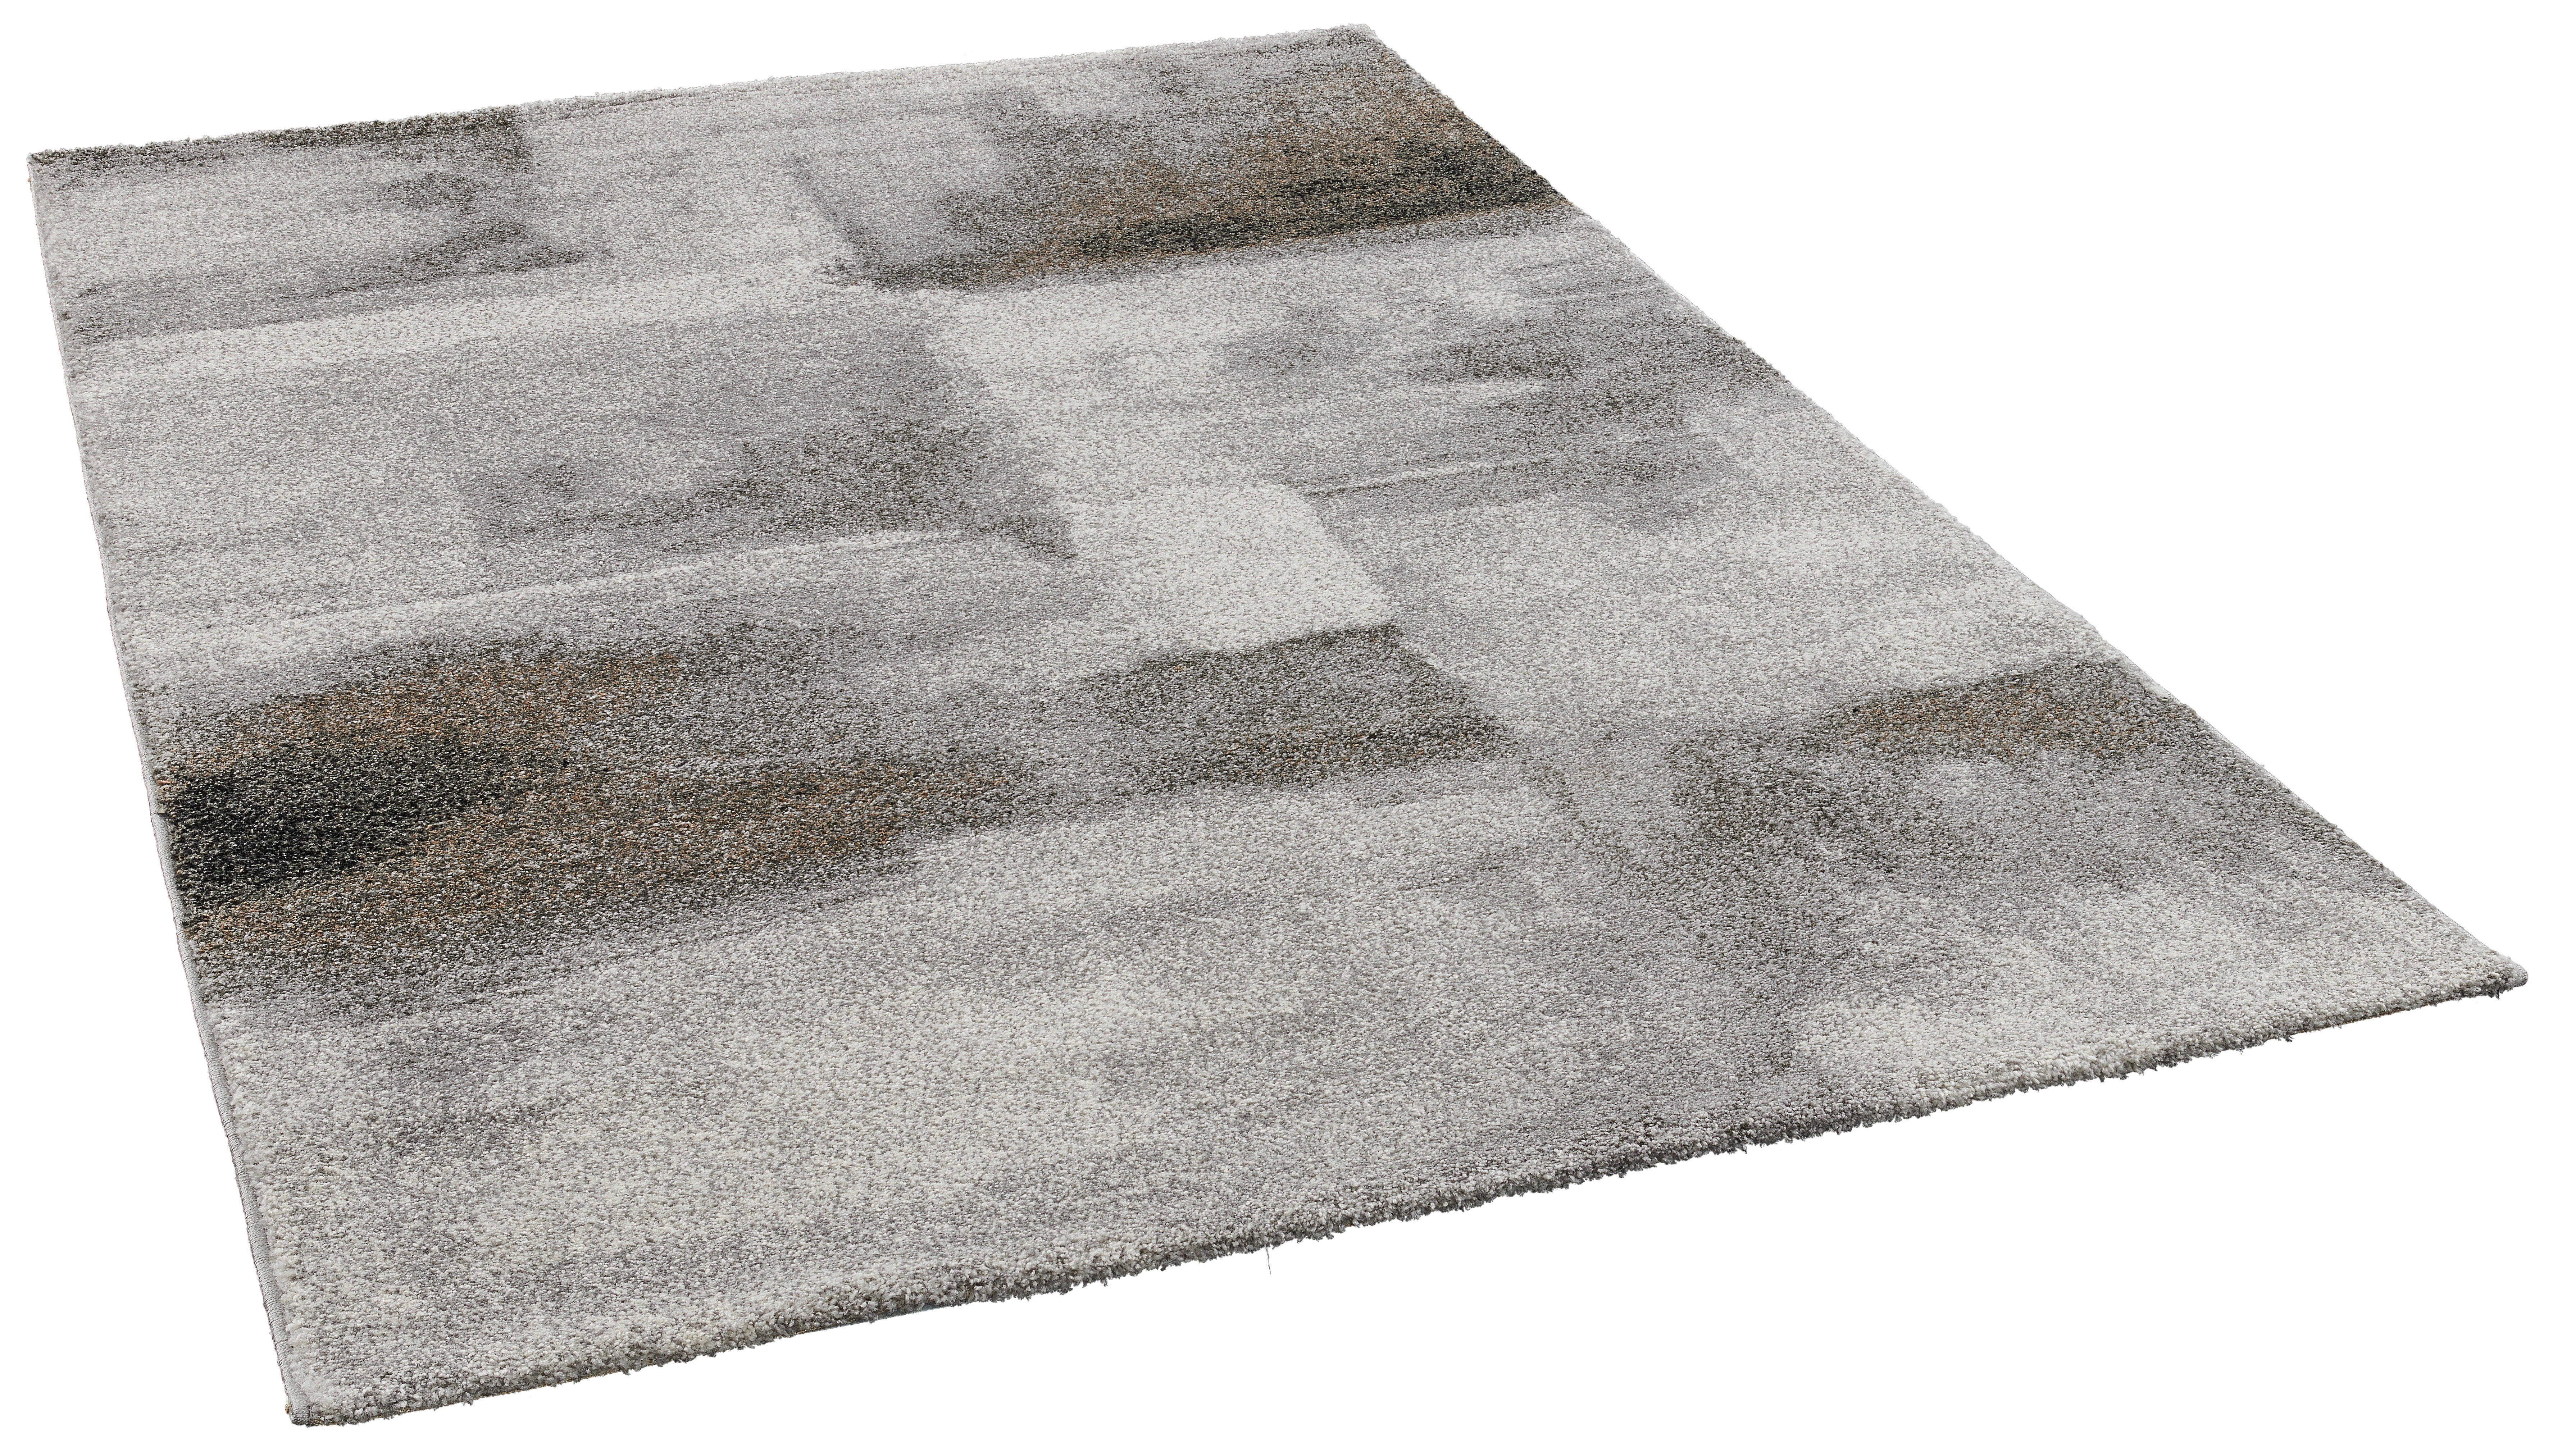 Teppich Rio grau B/L: ca. 160x230 cm Rio - grau (160,00/230,00cm)